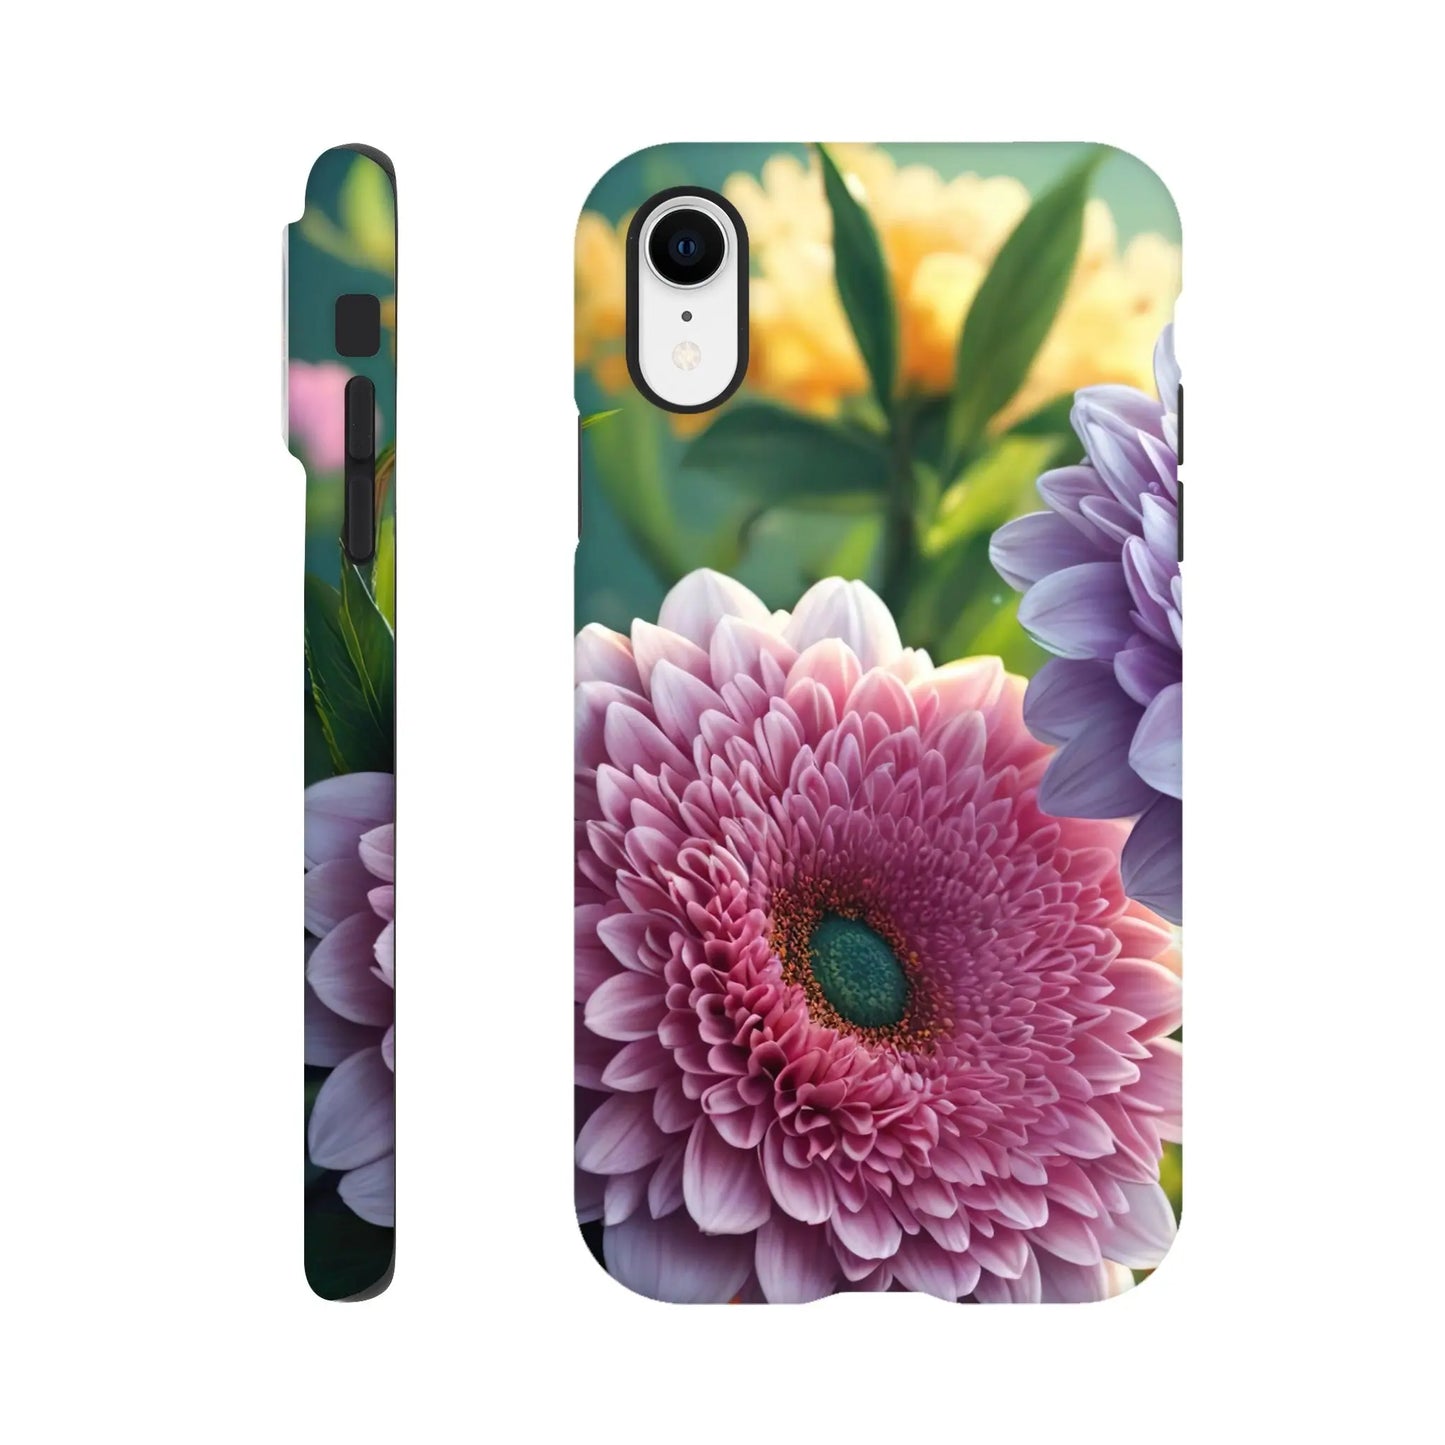 Smartphone-Hülle "Hart" - Blumen Vielfalt - Foto Stil, KI-Kunst, Pflanzen, iPhone-XR - RolConArt